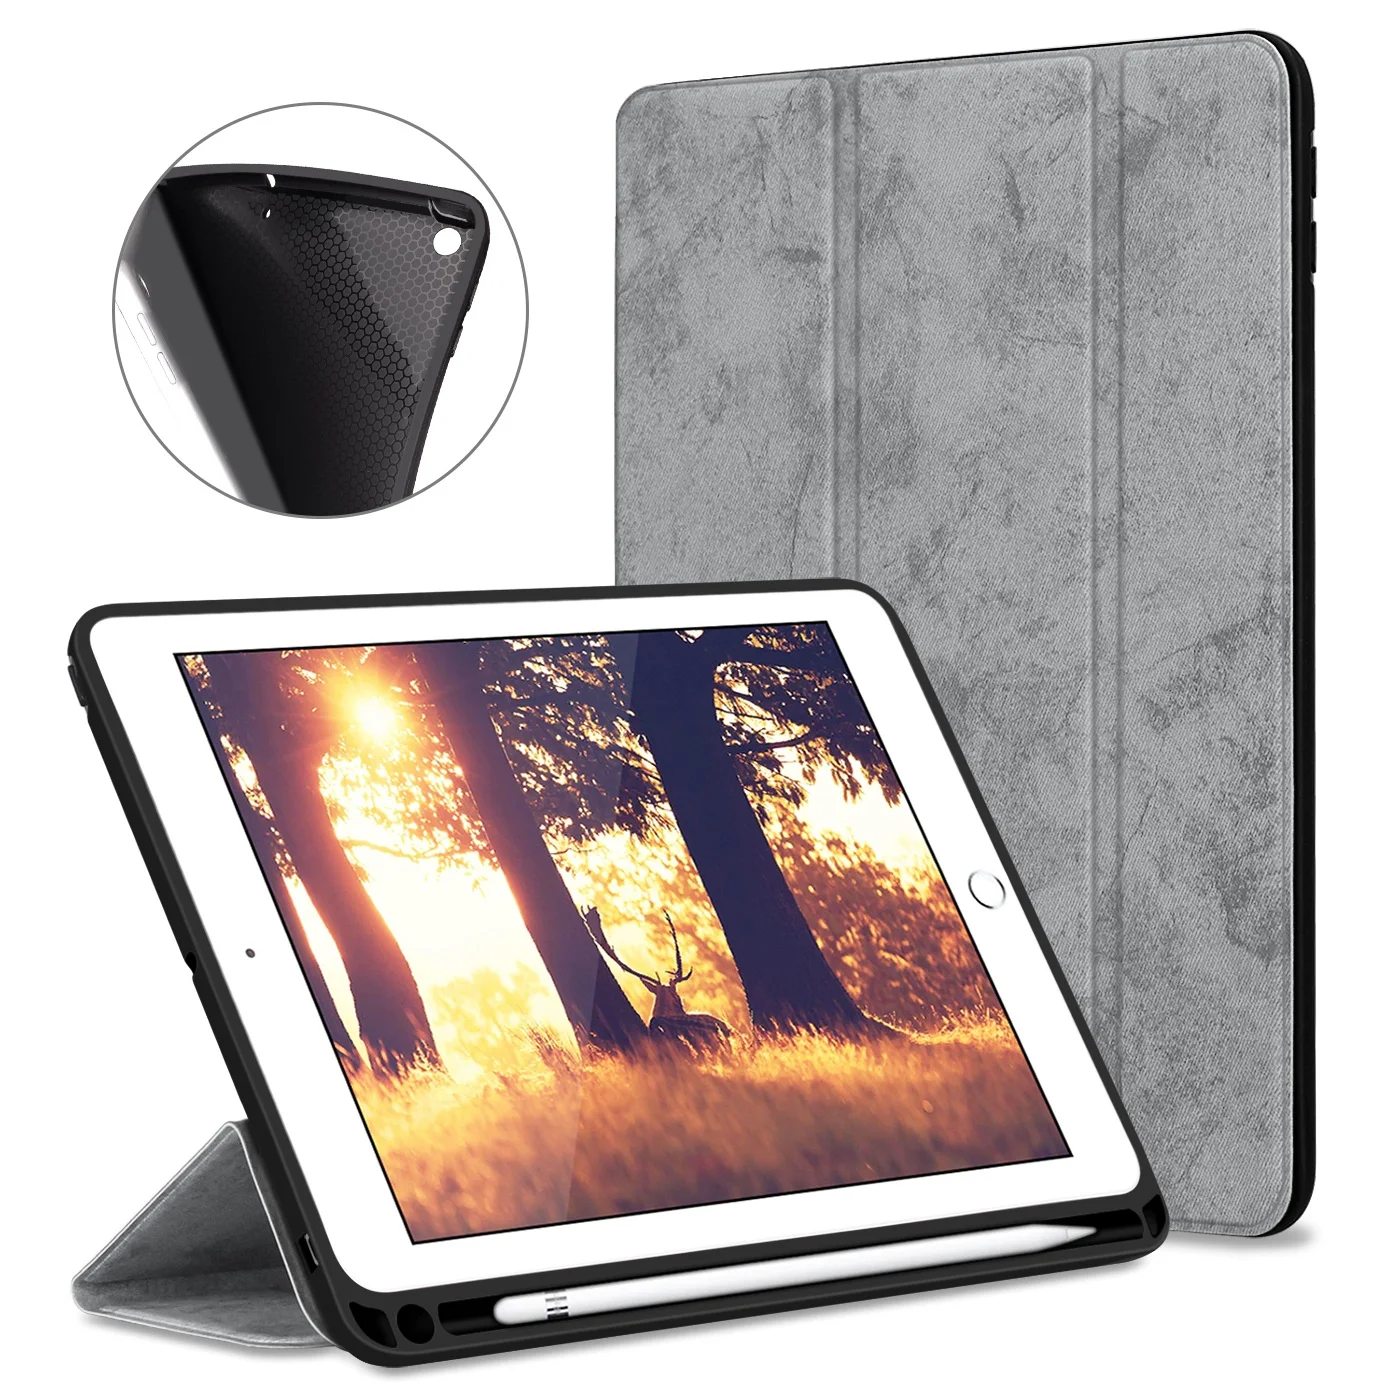 Чехол для iPad Pro 11 с держателем-карандашом для iPad 9,7 чехол мягкий силиконовый задний умный чехол для iPad 9,7 Funda Coque